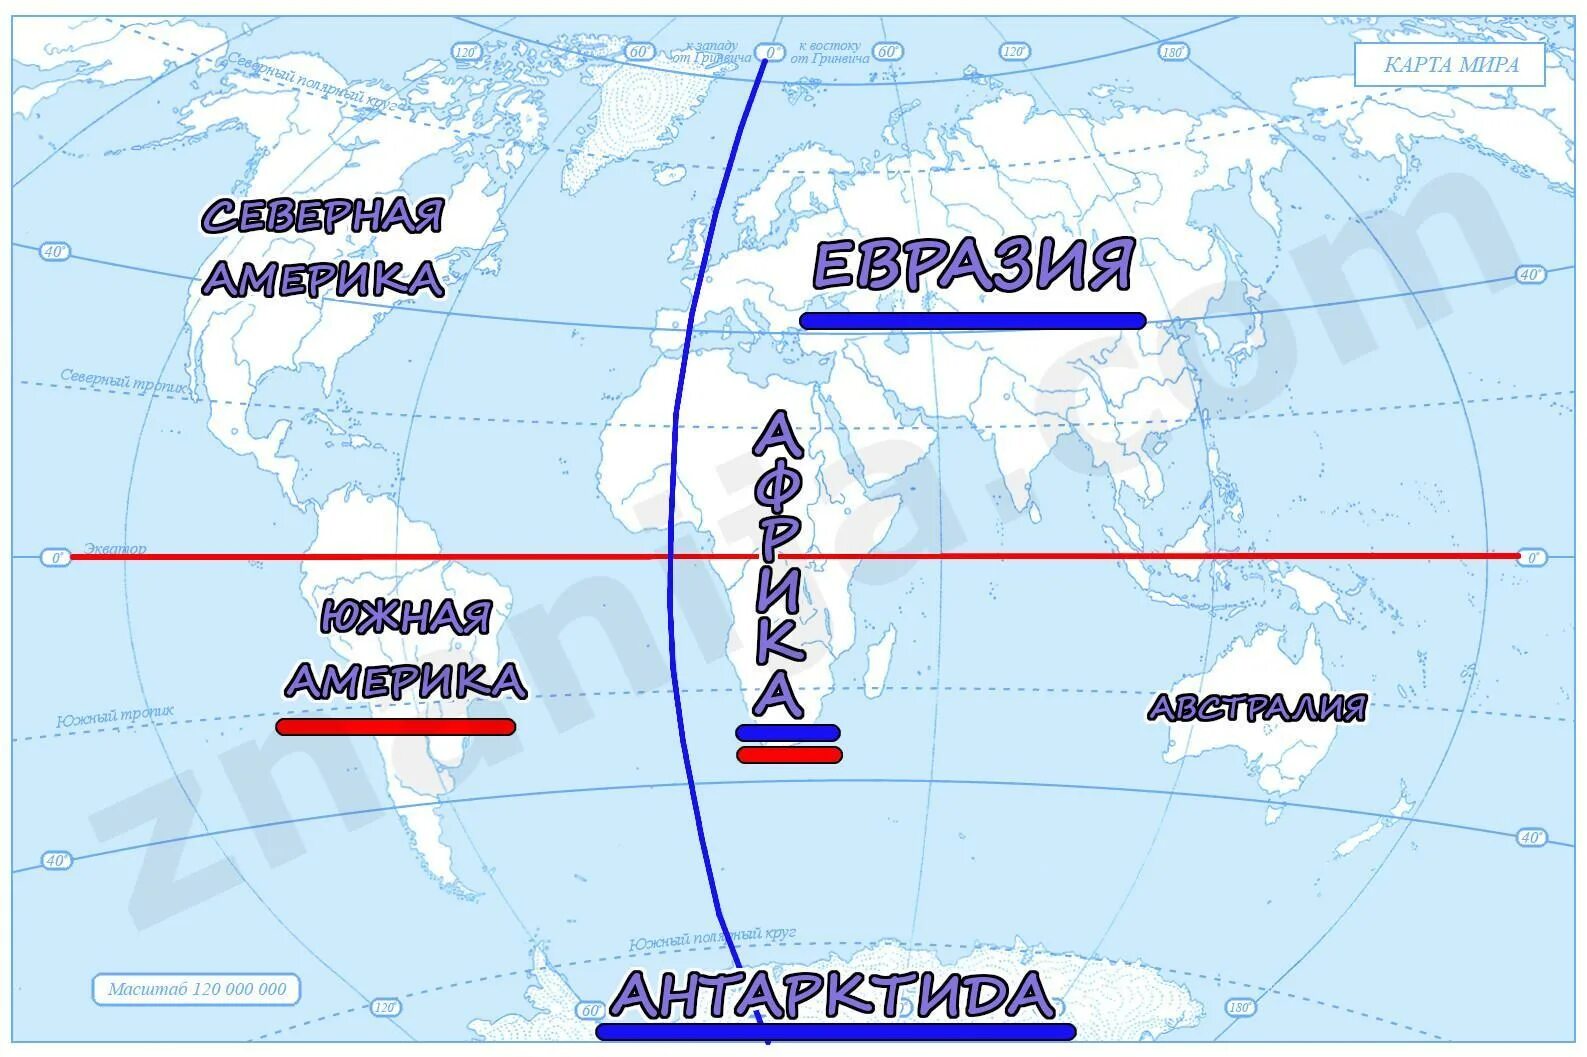 Какими линиями пересекается евразия. Нулевой Меридиан пересекает материки. Какой материк пересекает Экватор и нулевой Меридиан. Какие океаны пересекает нулевой Меридиан?.